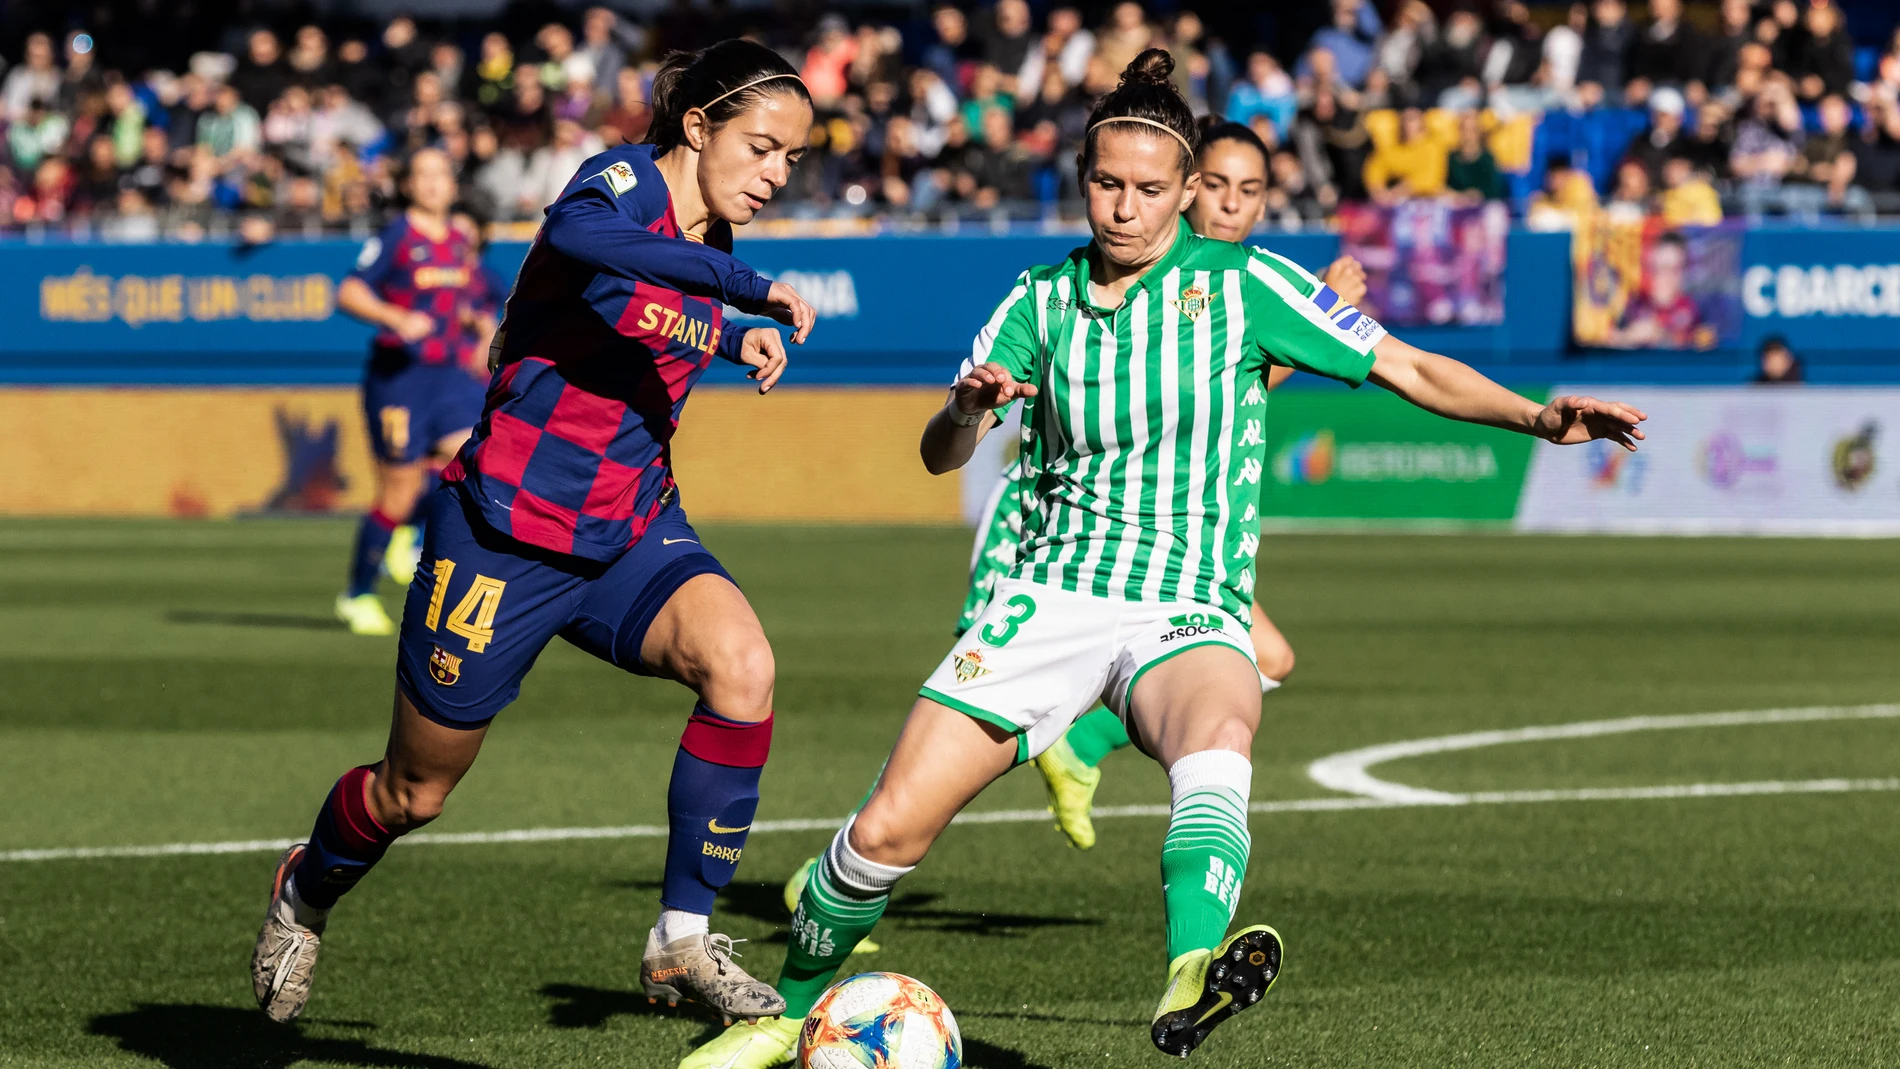 Football: Liga Iberdrola - FC Barcelona Women v Real Betis Women